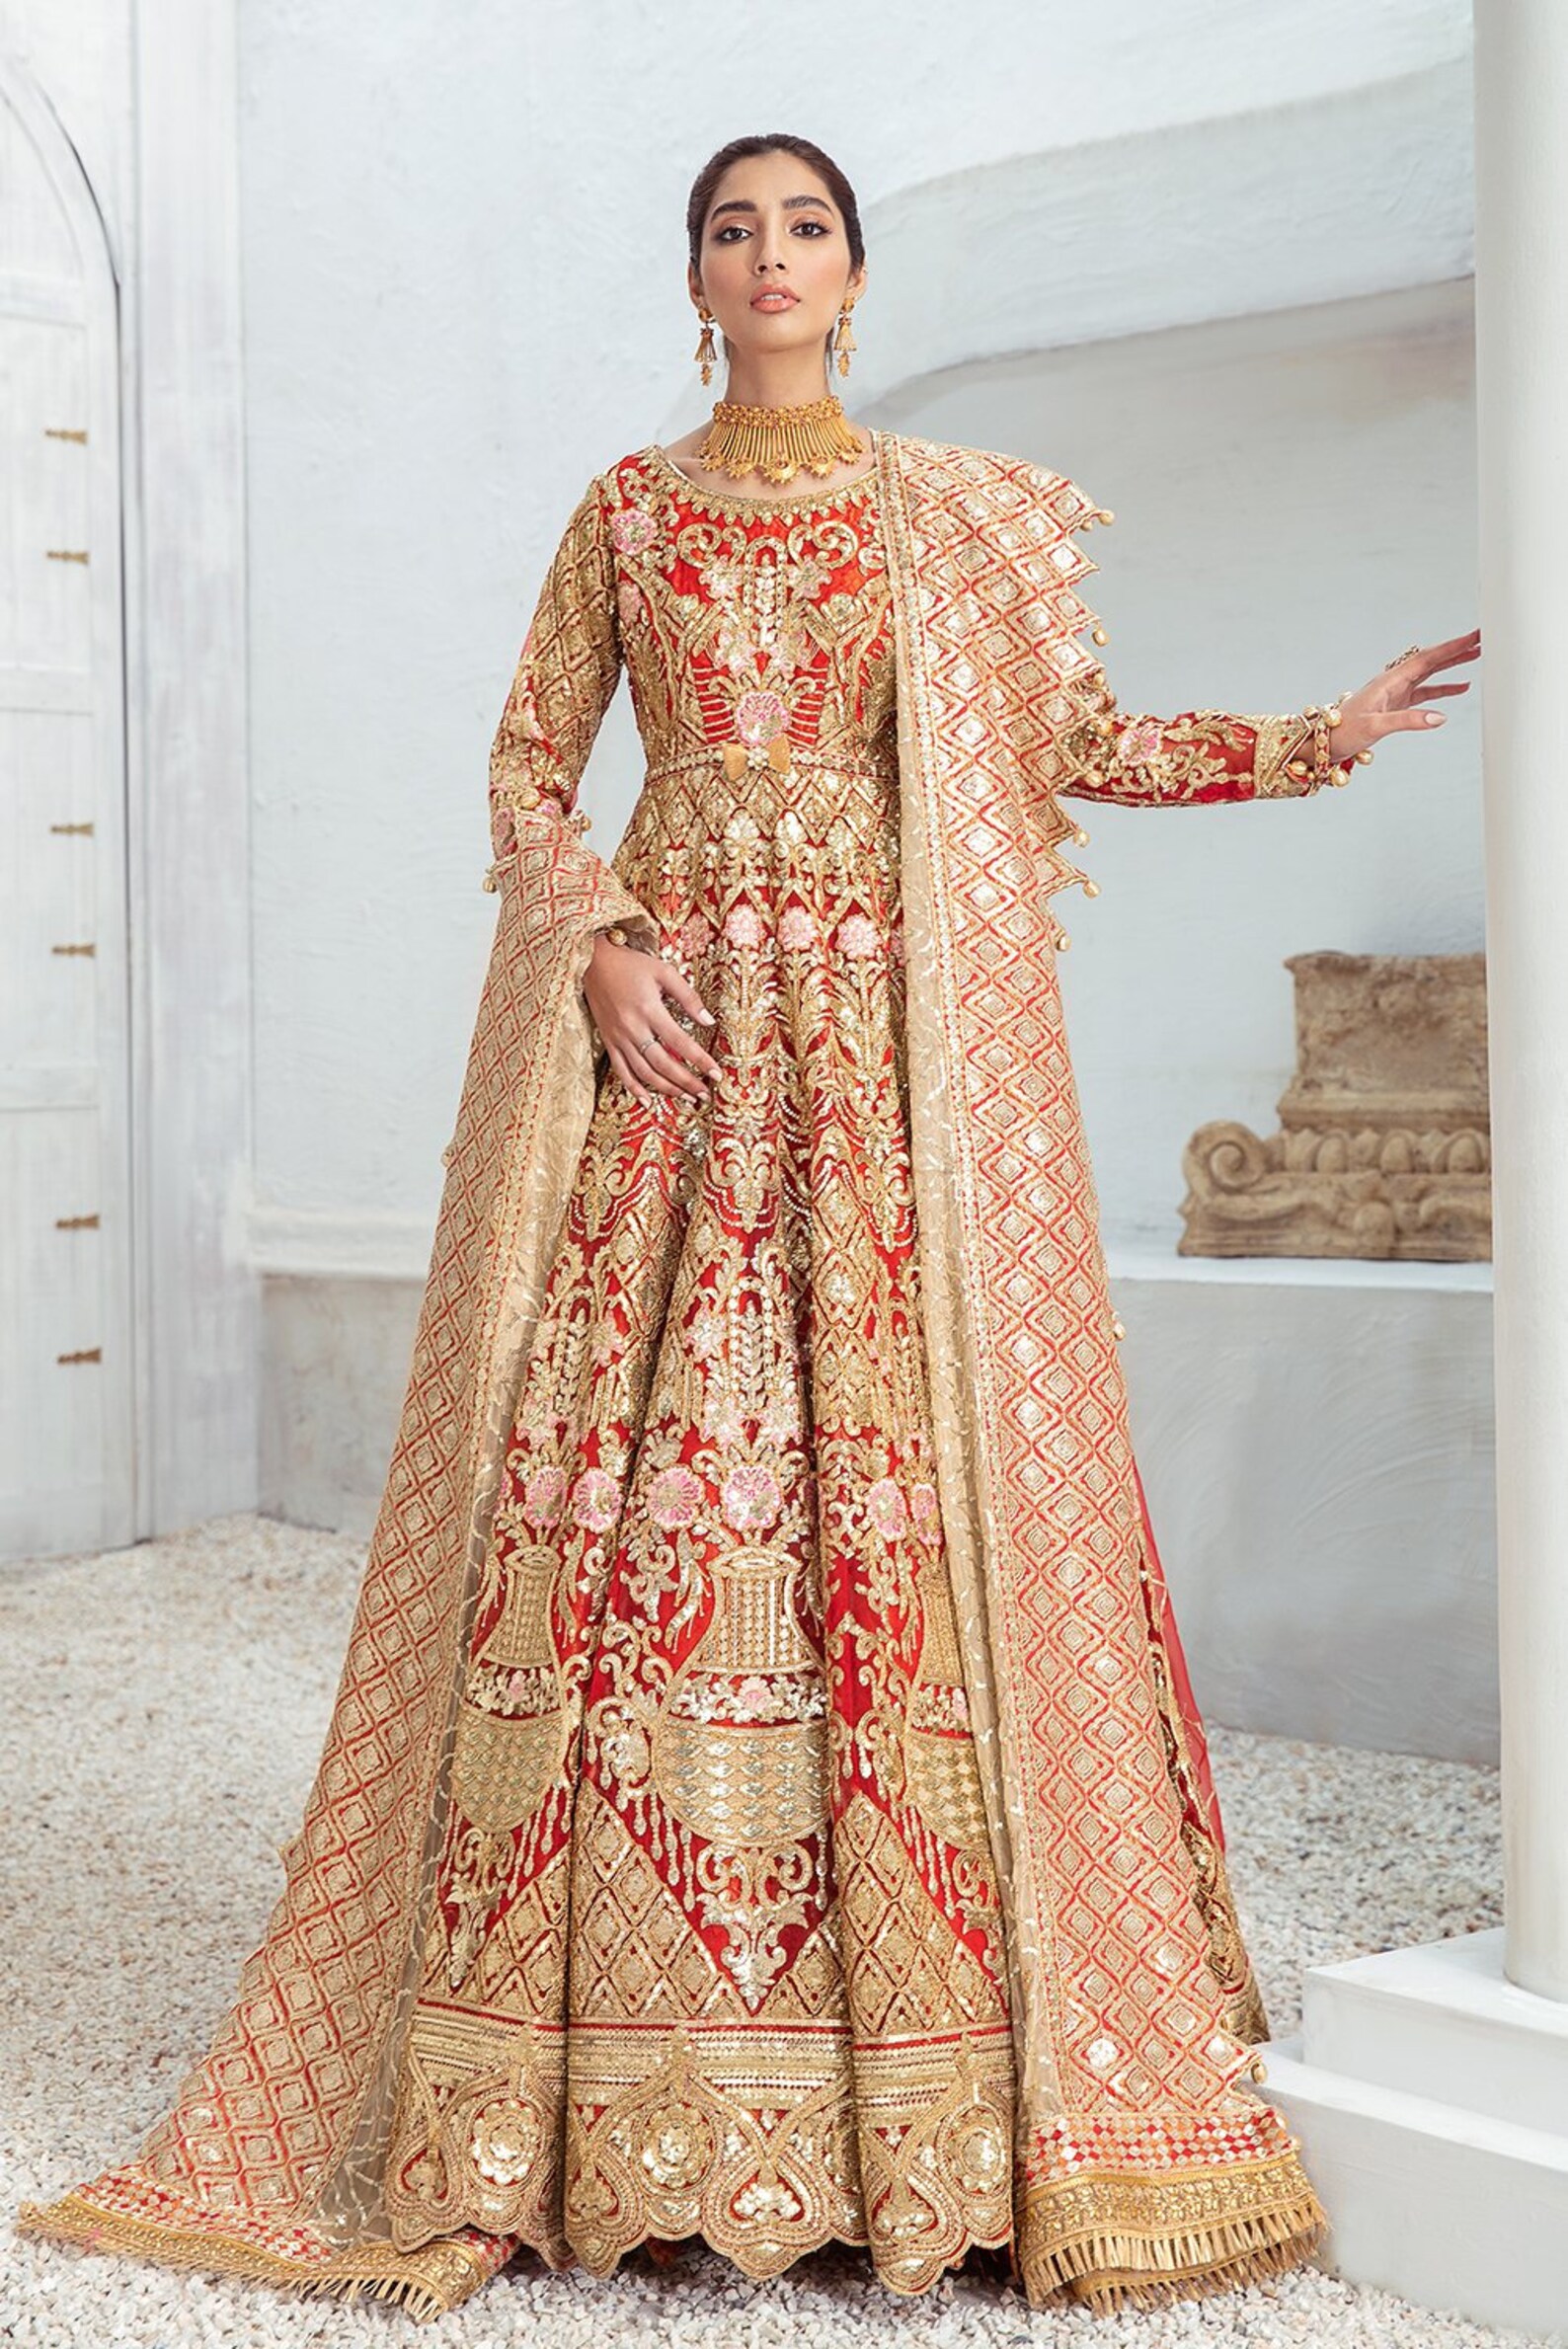 Pakistani Red Bridal Dress Wedding Reception Dress Indian Etsy Uk